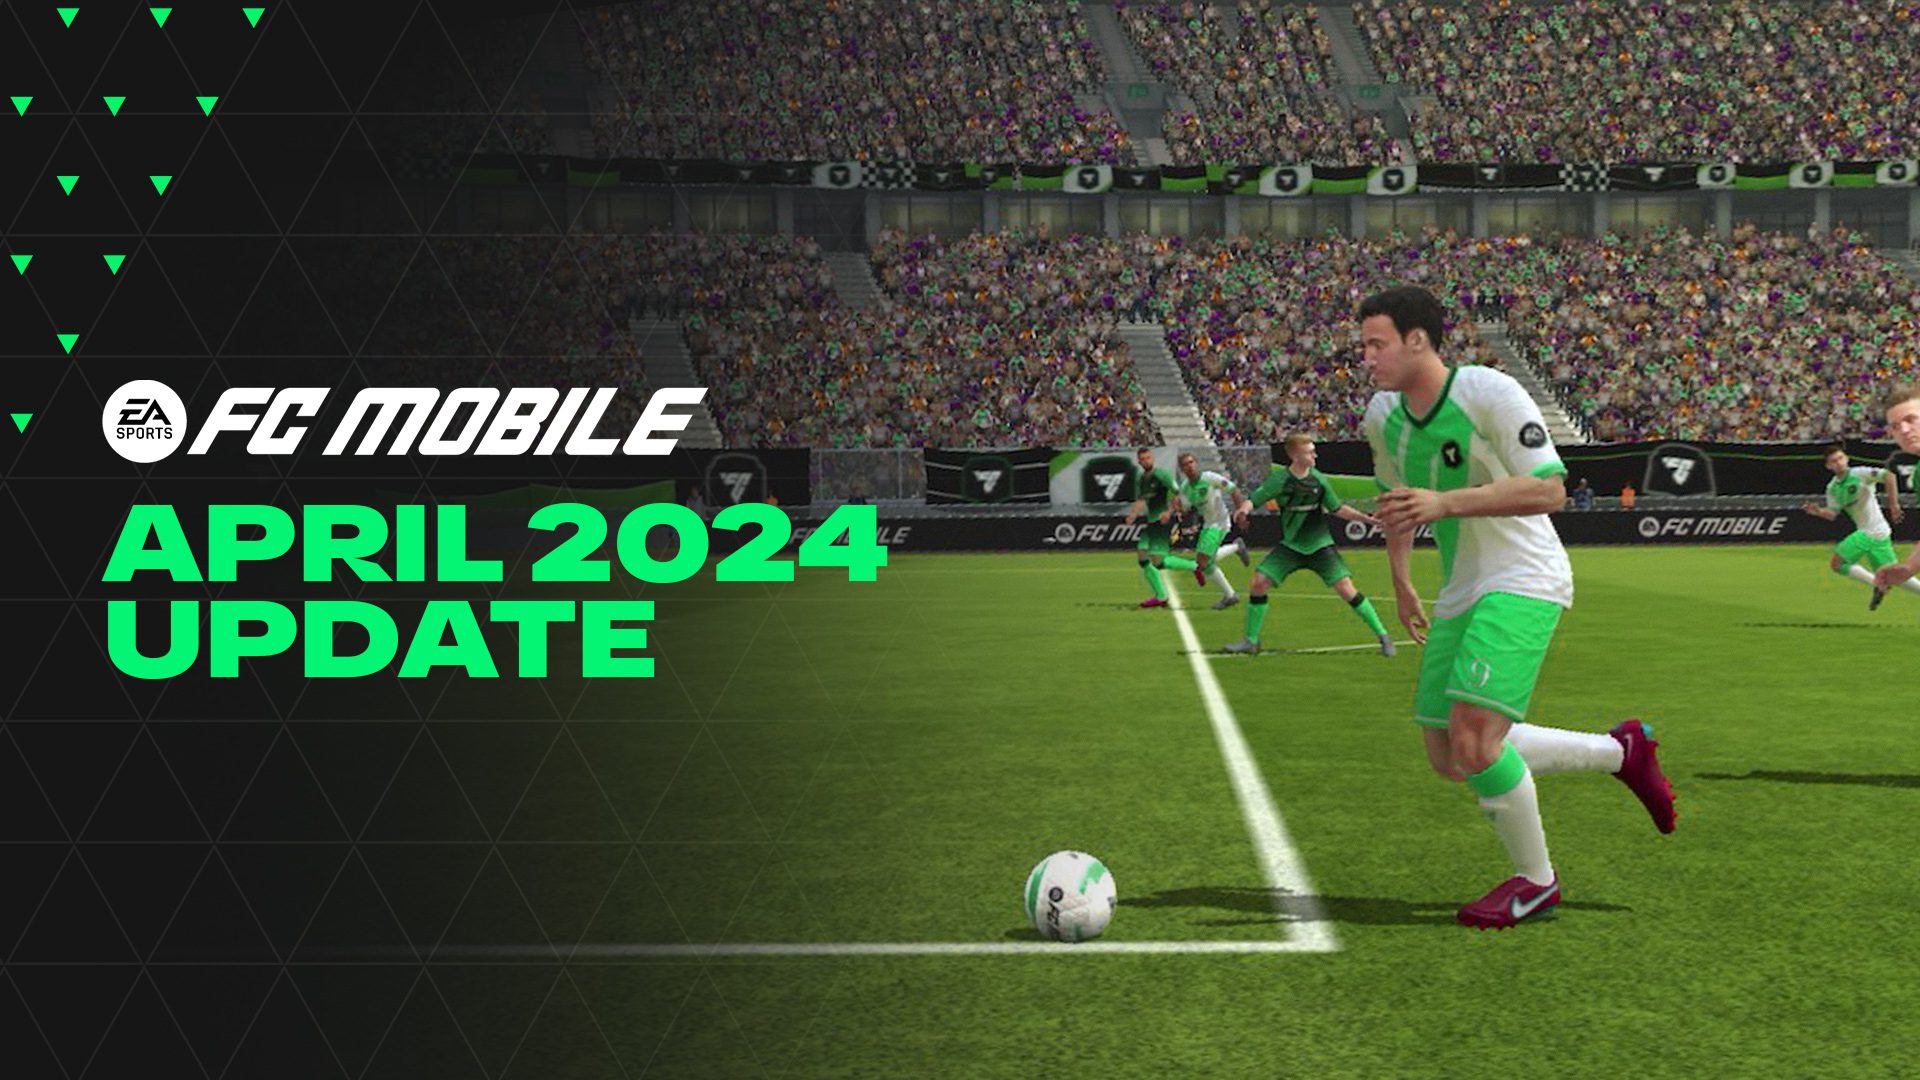 Pembaruan EA SPORTS FC MOBILE 9 April: Semua Peningkatan Gameplay image